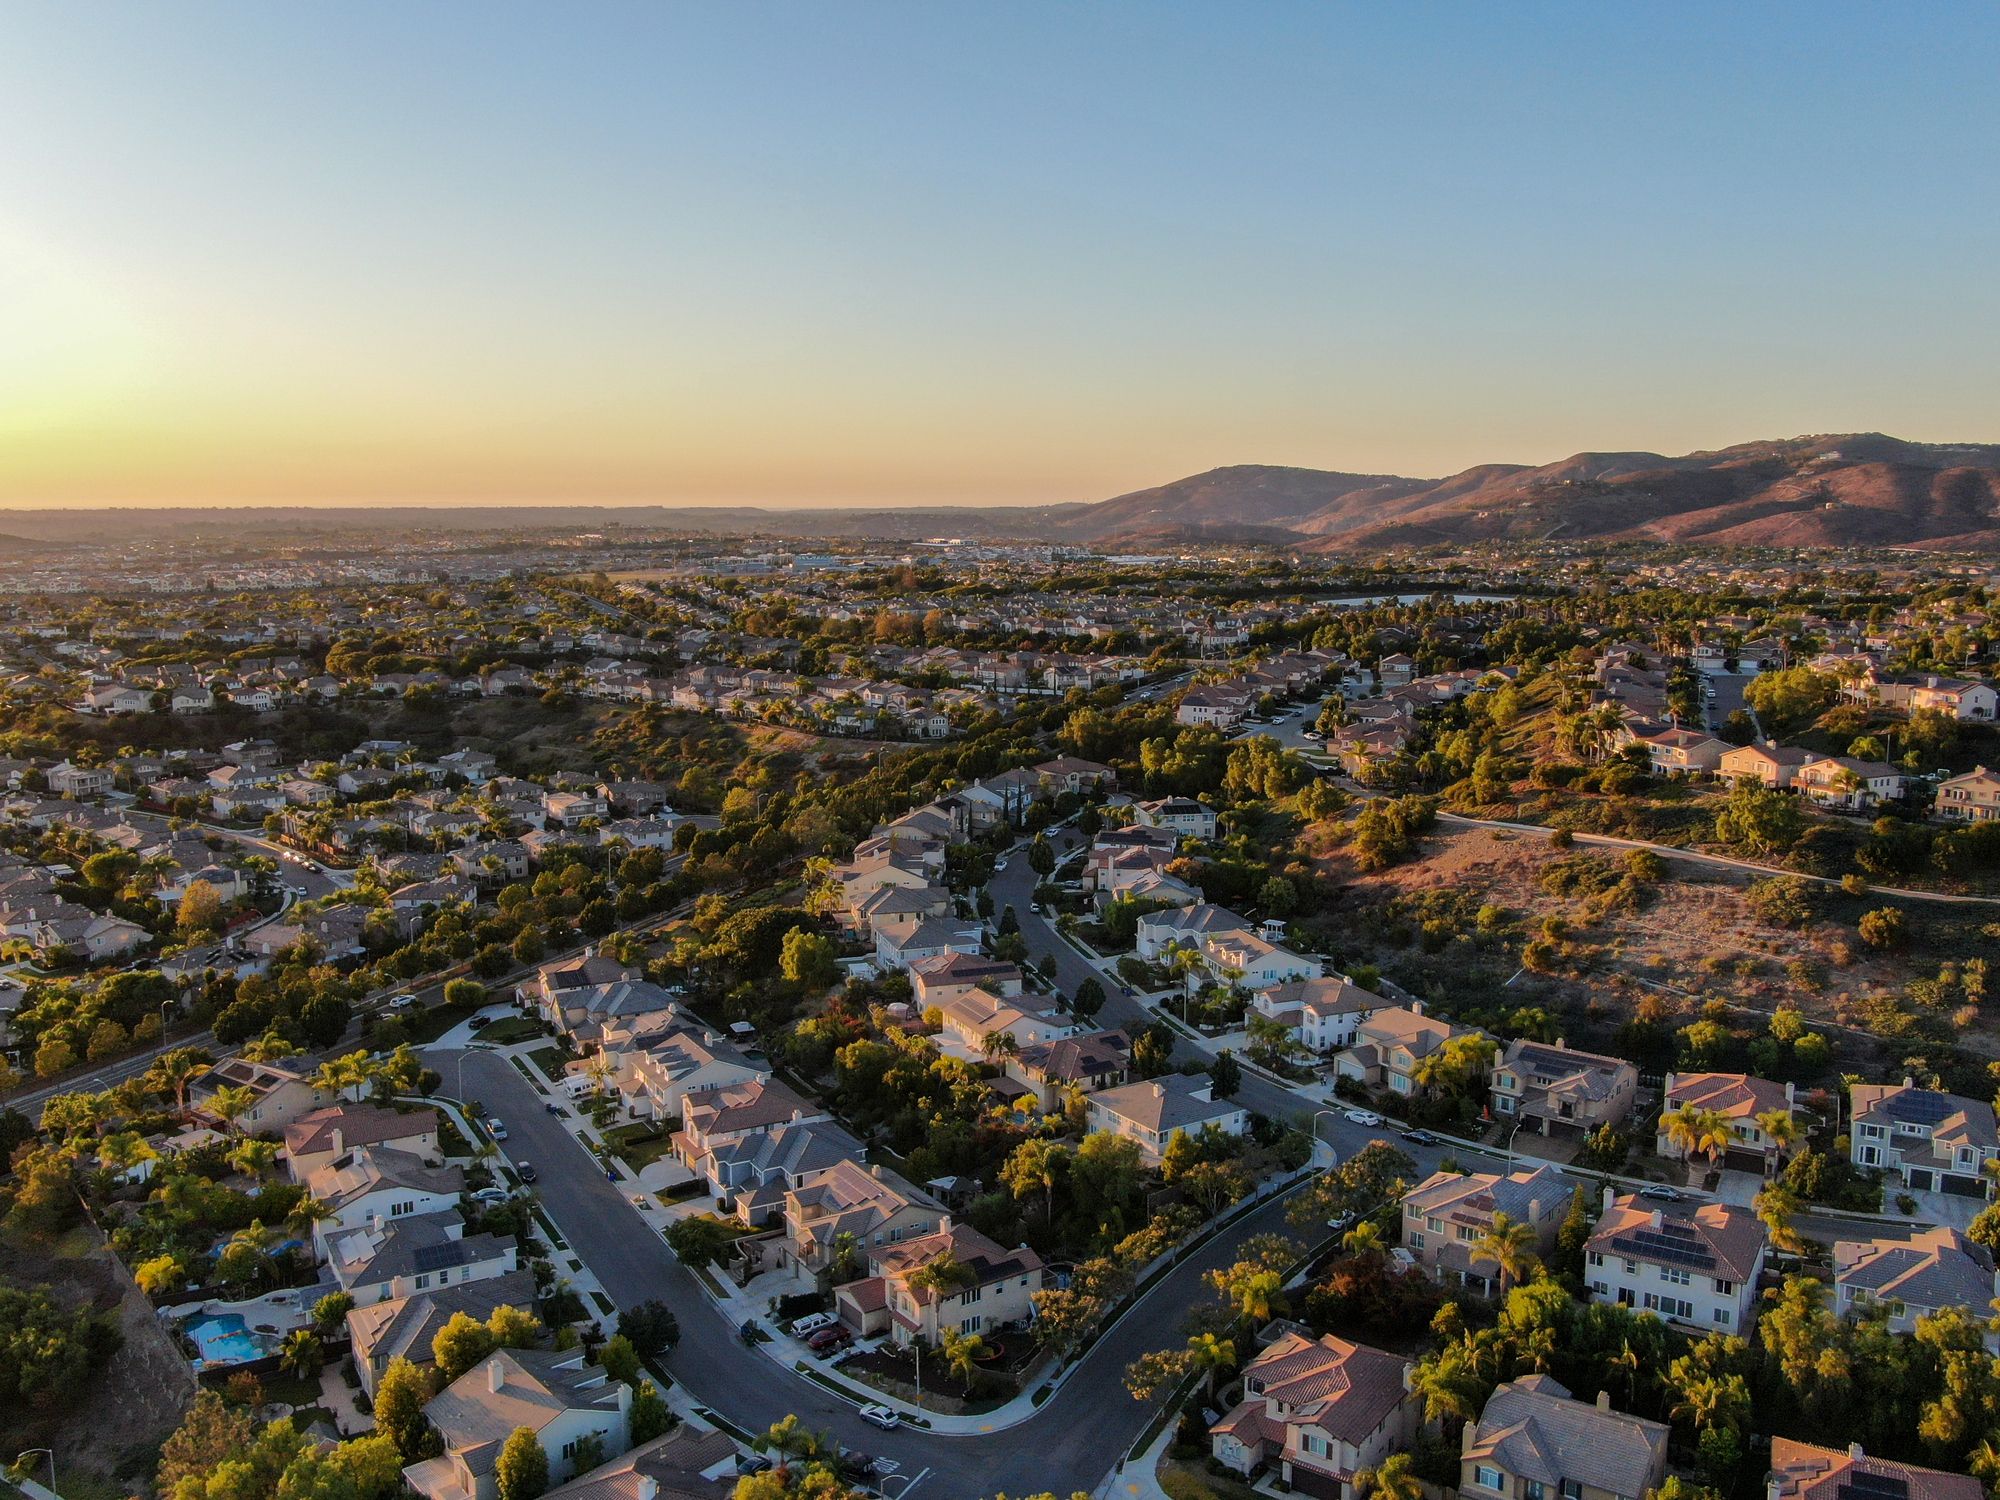 Neighborhood aerial view at dusk